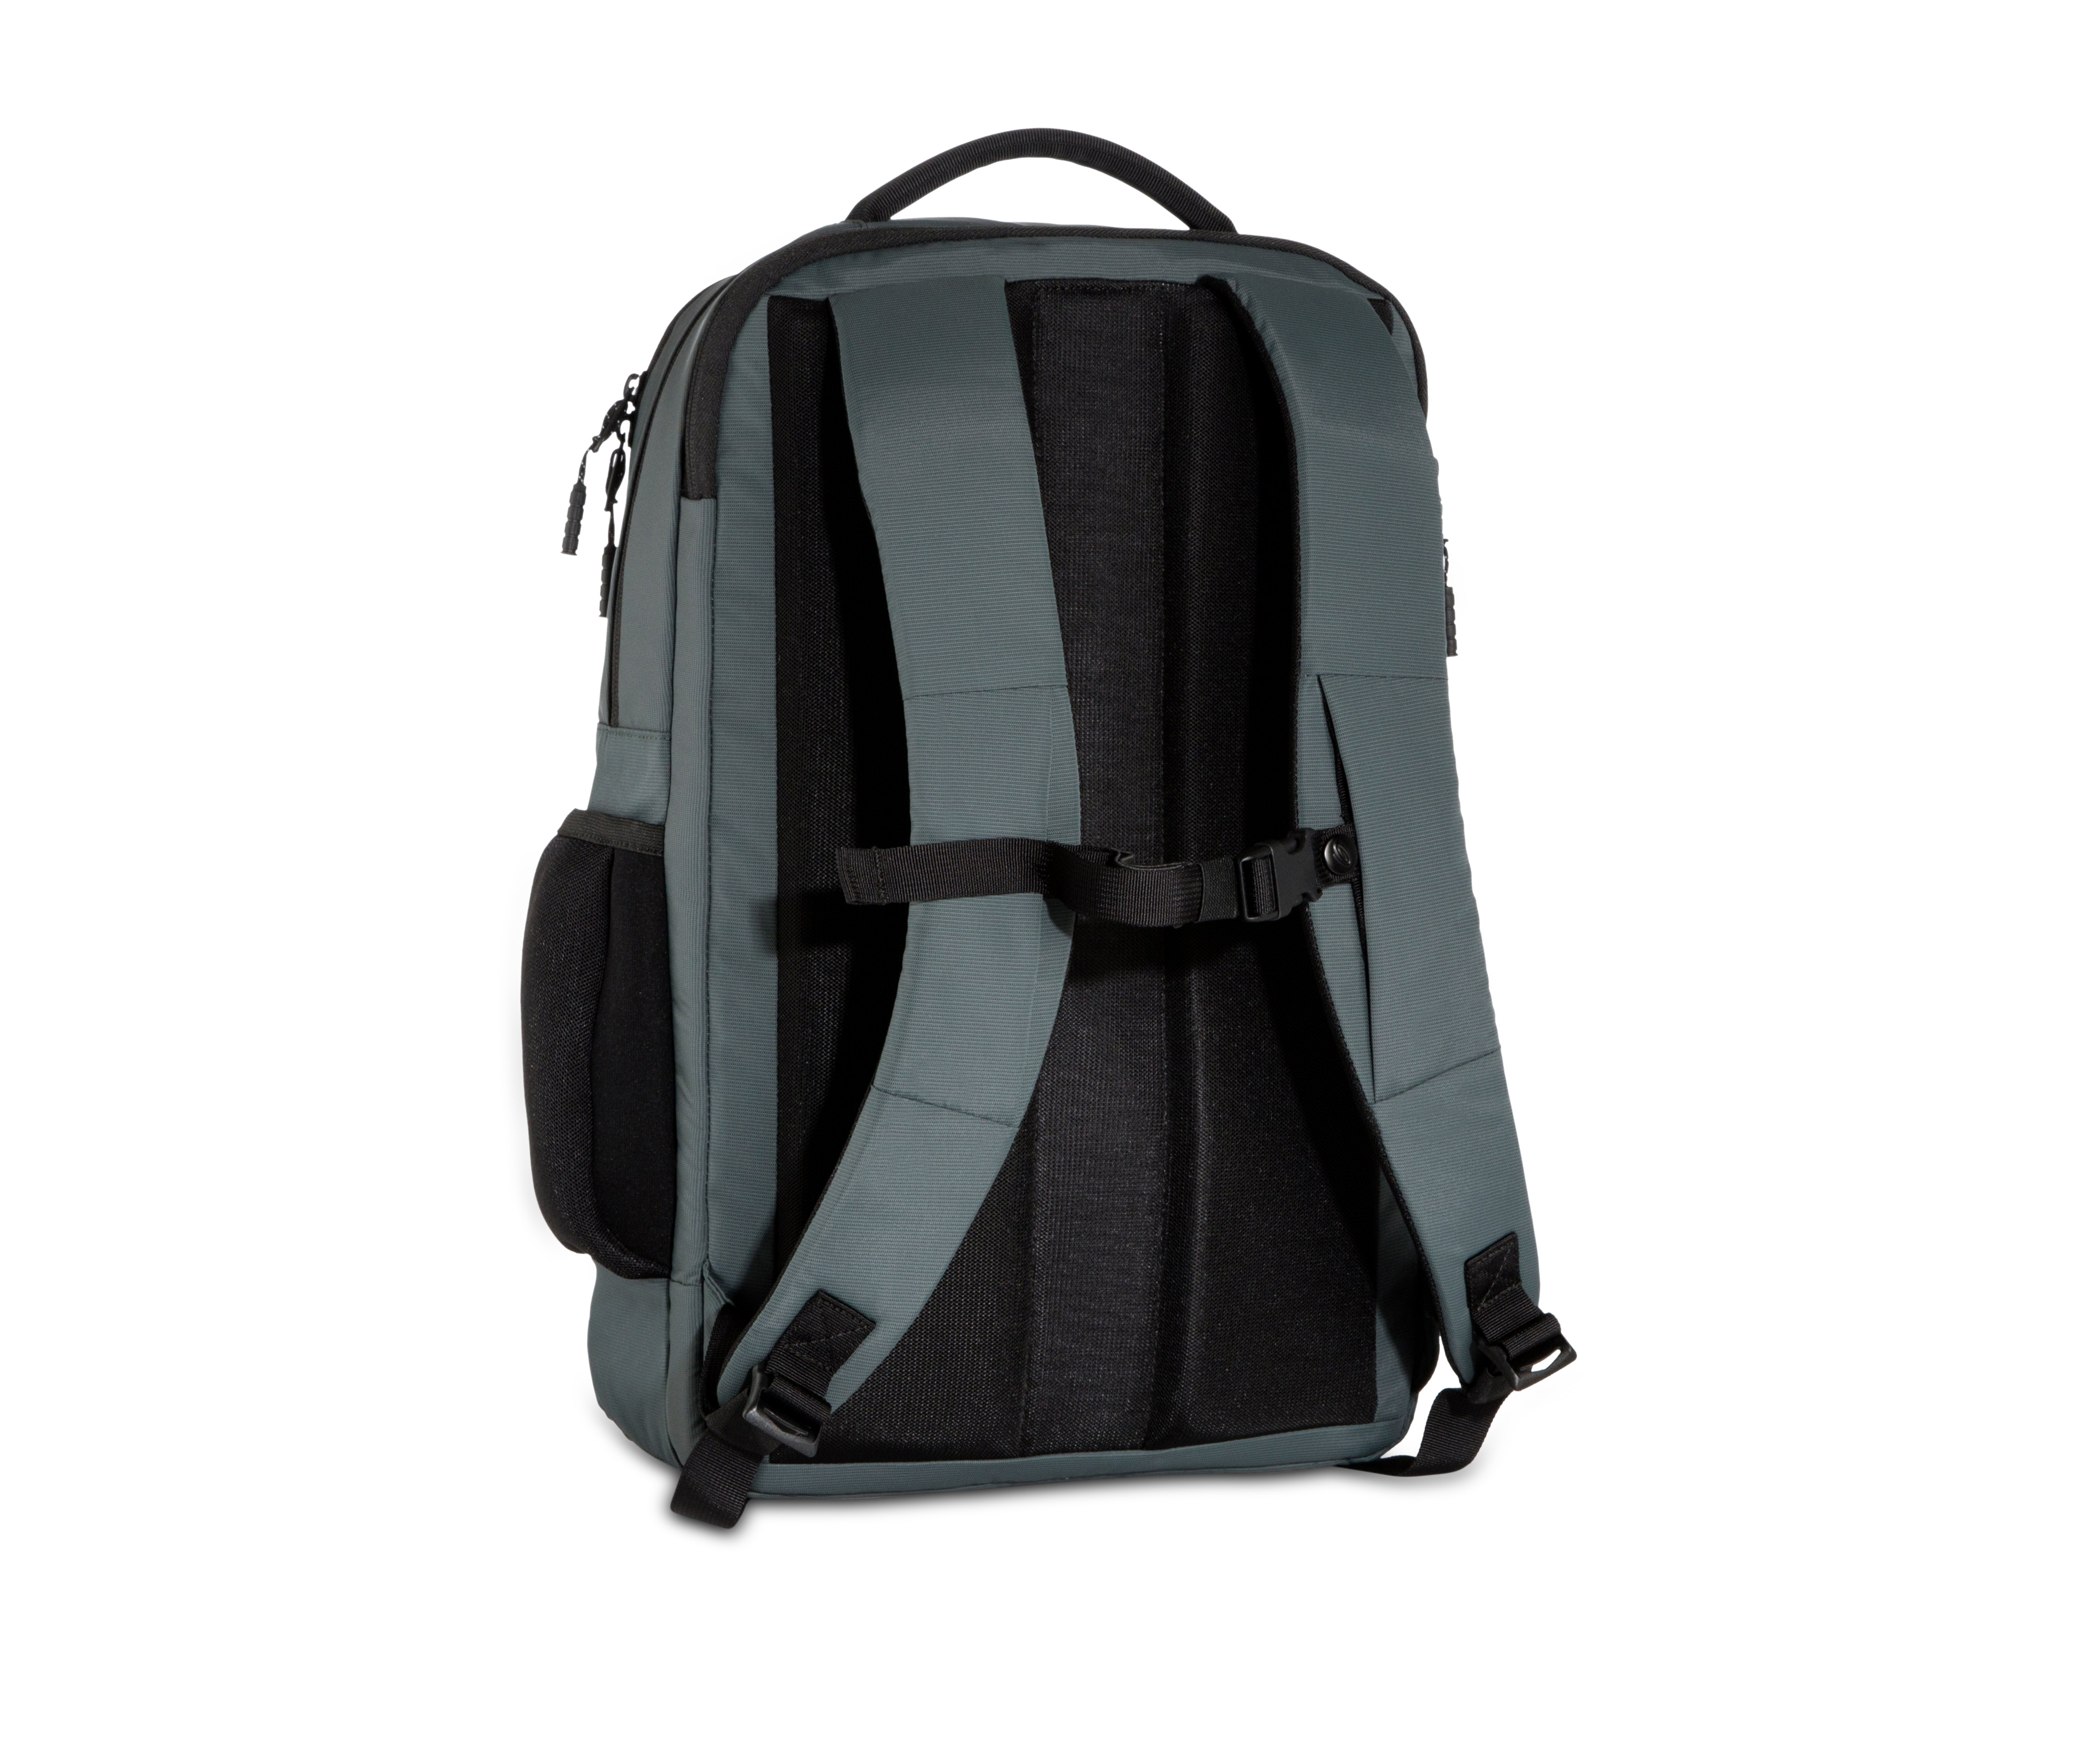 Timbuk2 Authority Laptop Backpack | eBay